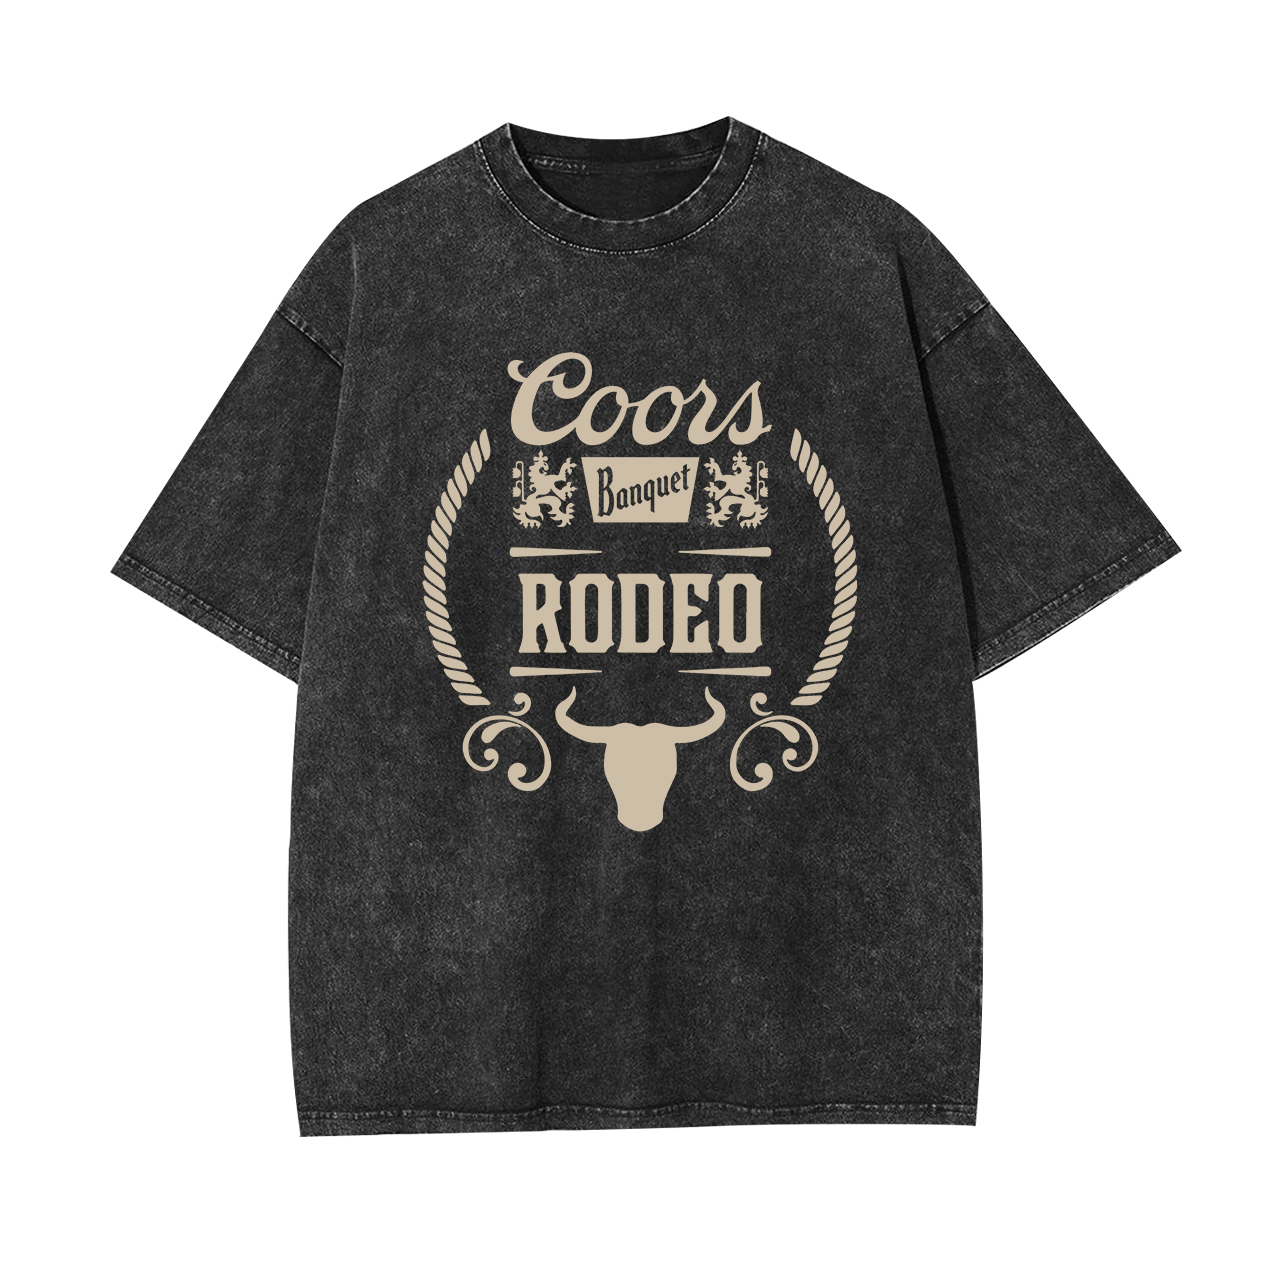 Coors Banquet Rodeo Garment-dye Tees